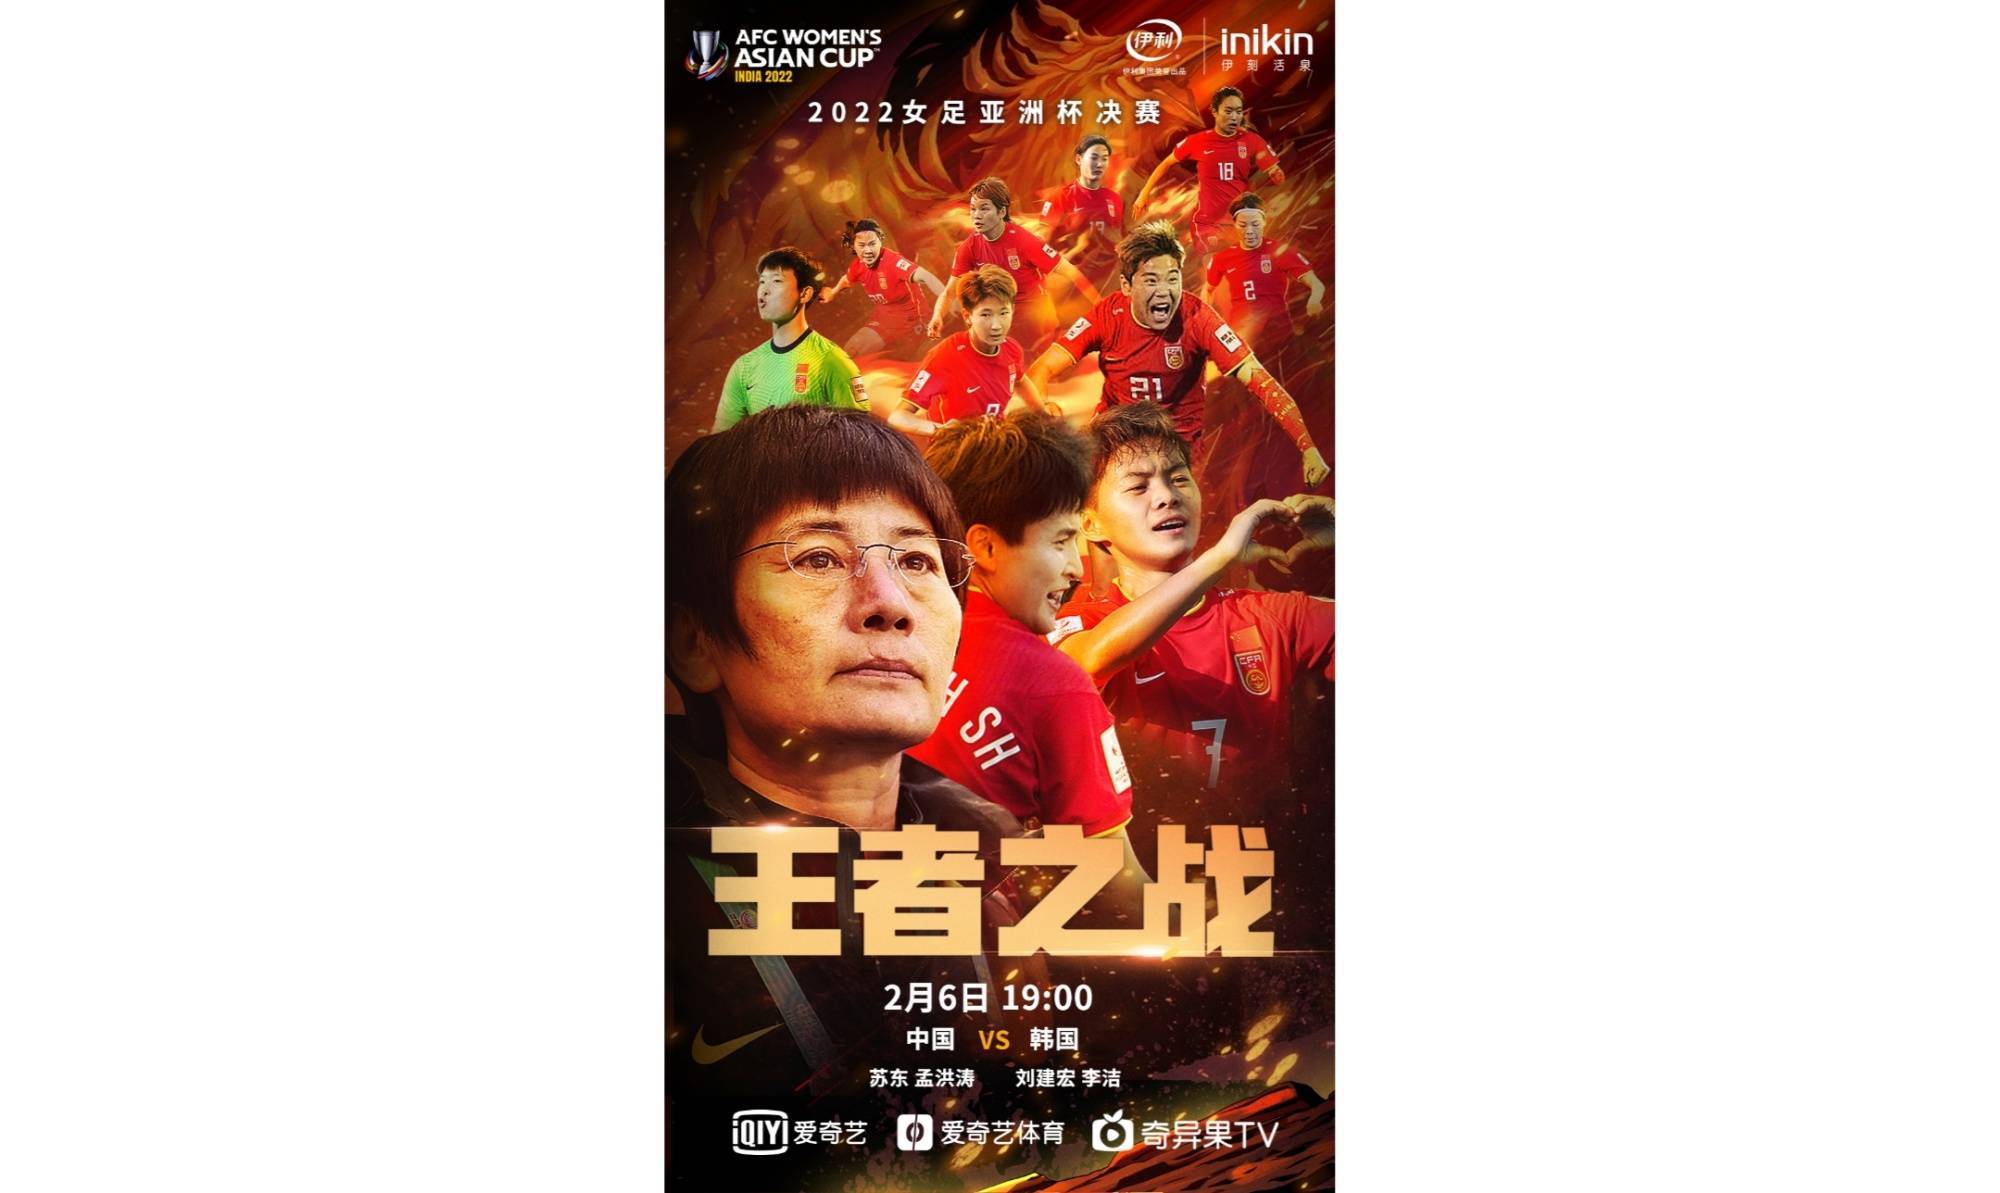 亚洲杯|爱奇艺今晚直播女足亚洲杯决赛 见证中国女足冲击亚洲杯冠军